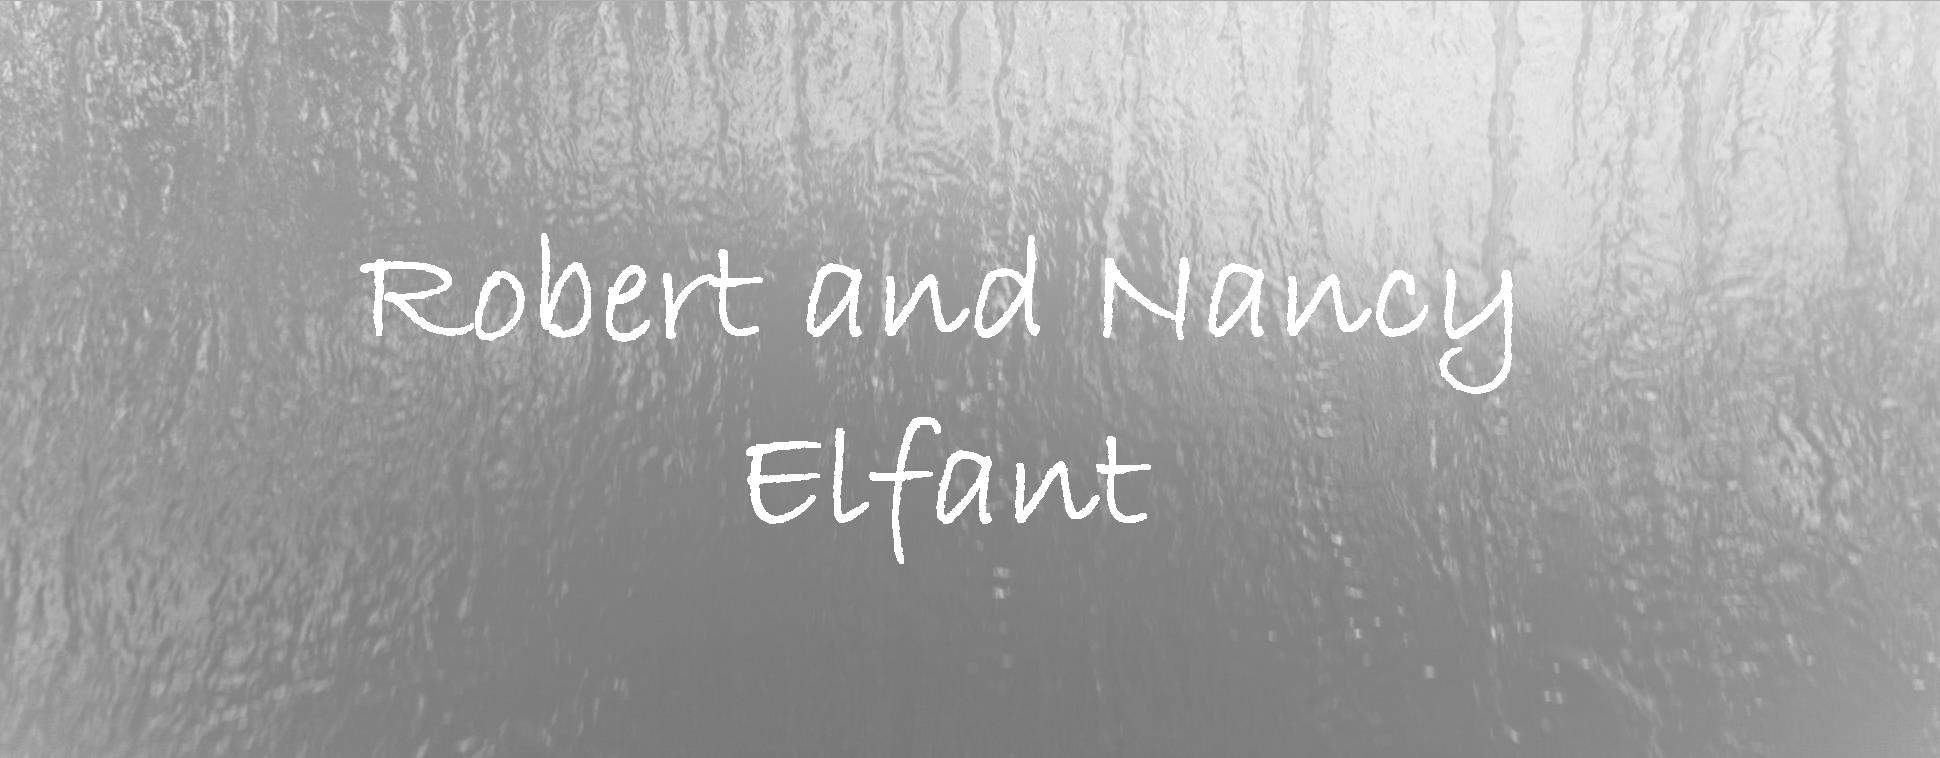 Robert and Nancy Elfant.jpg